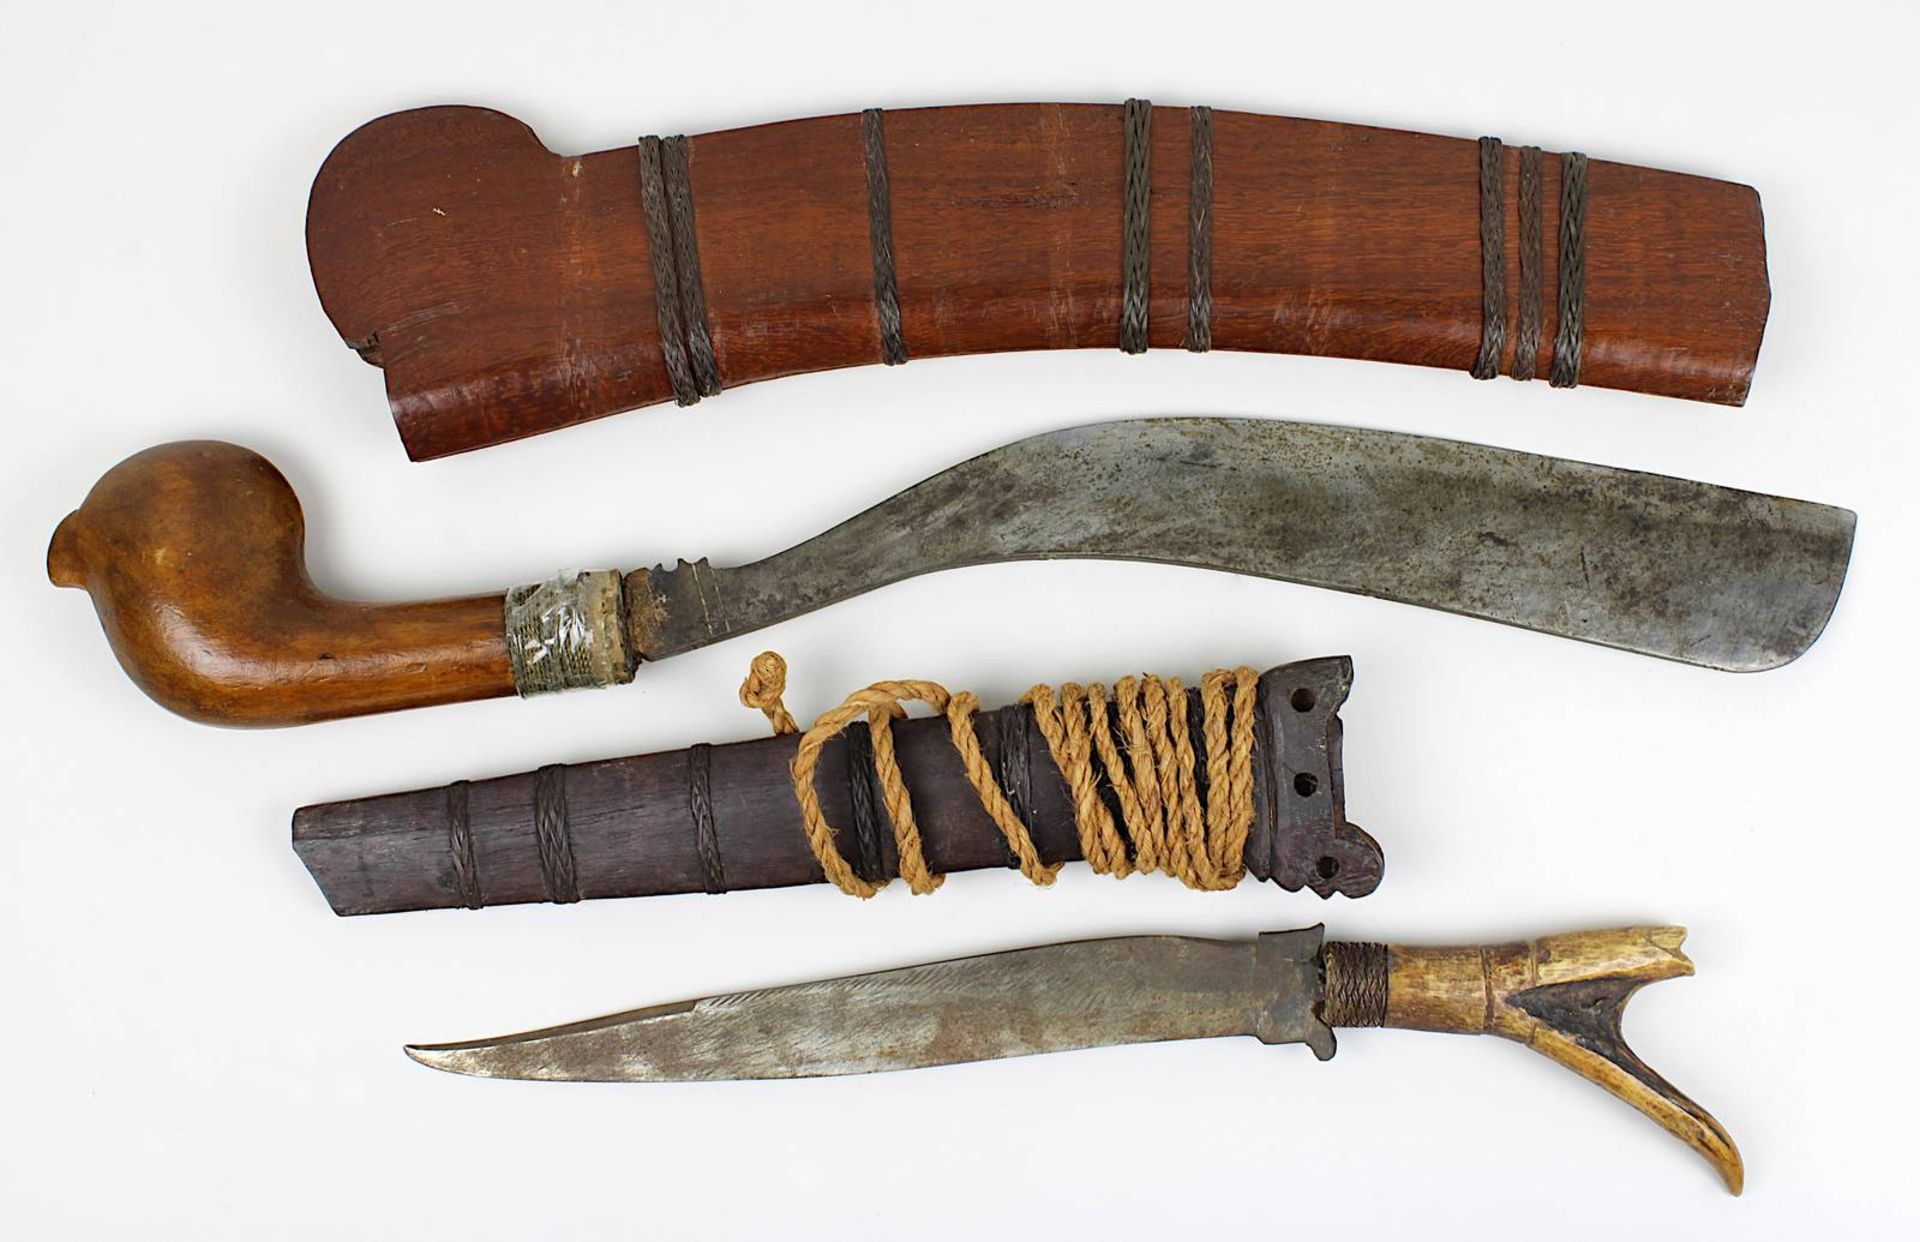 Indonesische Parang-Machete und Messer mit Griff aus Geweih: Parang mit geschweifter Klinge (leichte